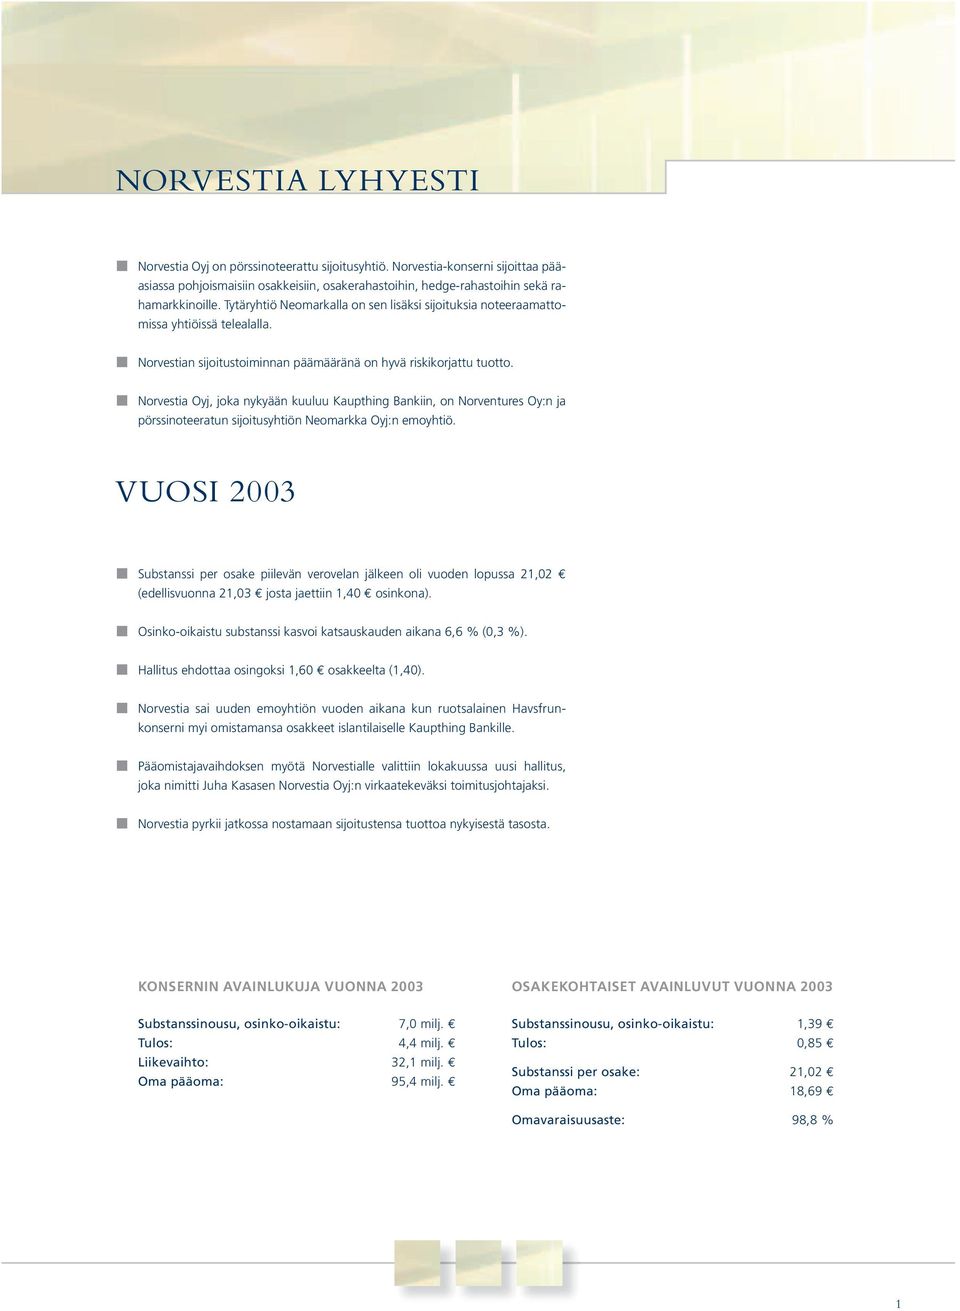 Norvestia Oyj, joka nykyään kuuluu Kaupthing Bankiin, on Norventures Oy:n ja pörssinoteeratun sijoitusyhtiön Neomarkka Oyj:n emoyhtiö.